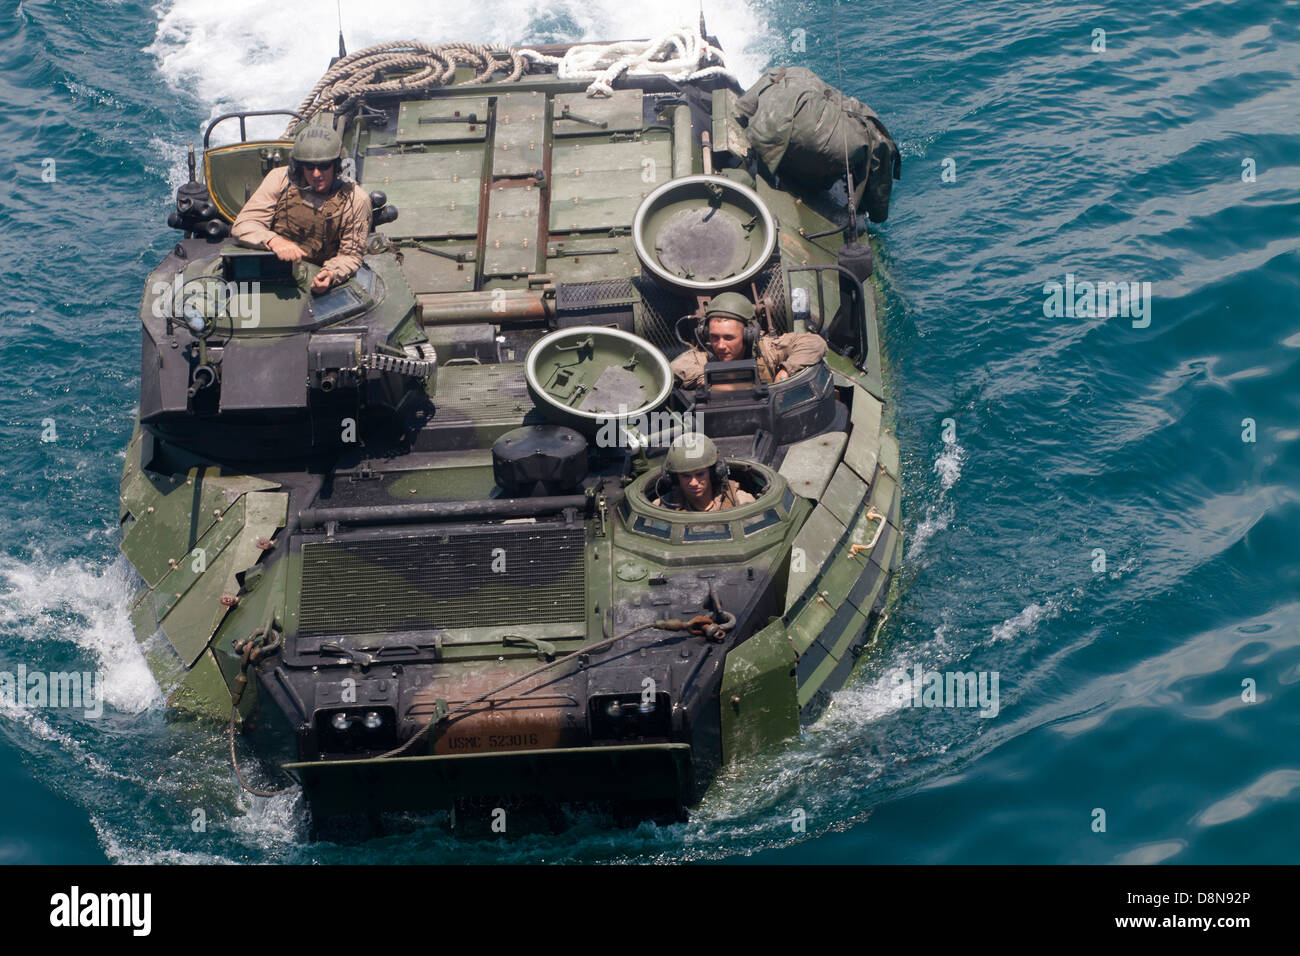 Les Marines américains à partir de l'assaut amphibie USS Bataan au cours d'une opération d'entraînement amphibie, le 18 mai 2013 dans l'océan Atlantique. Banque D'Images